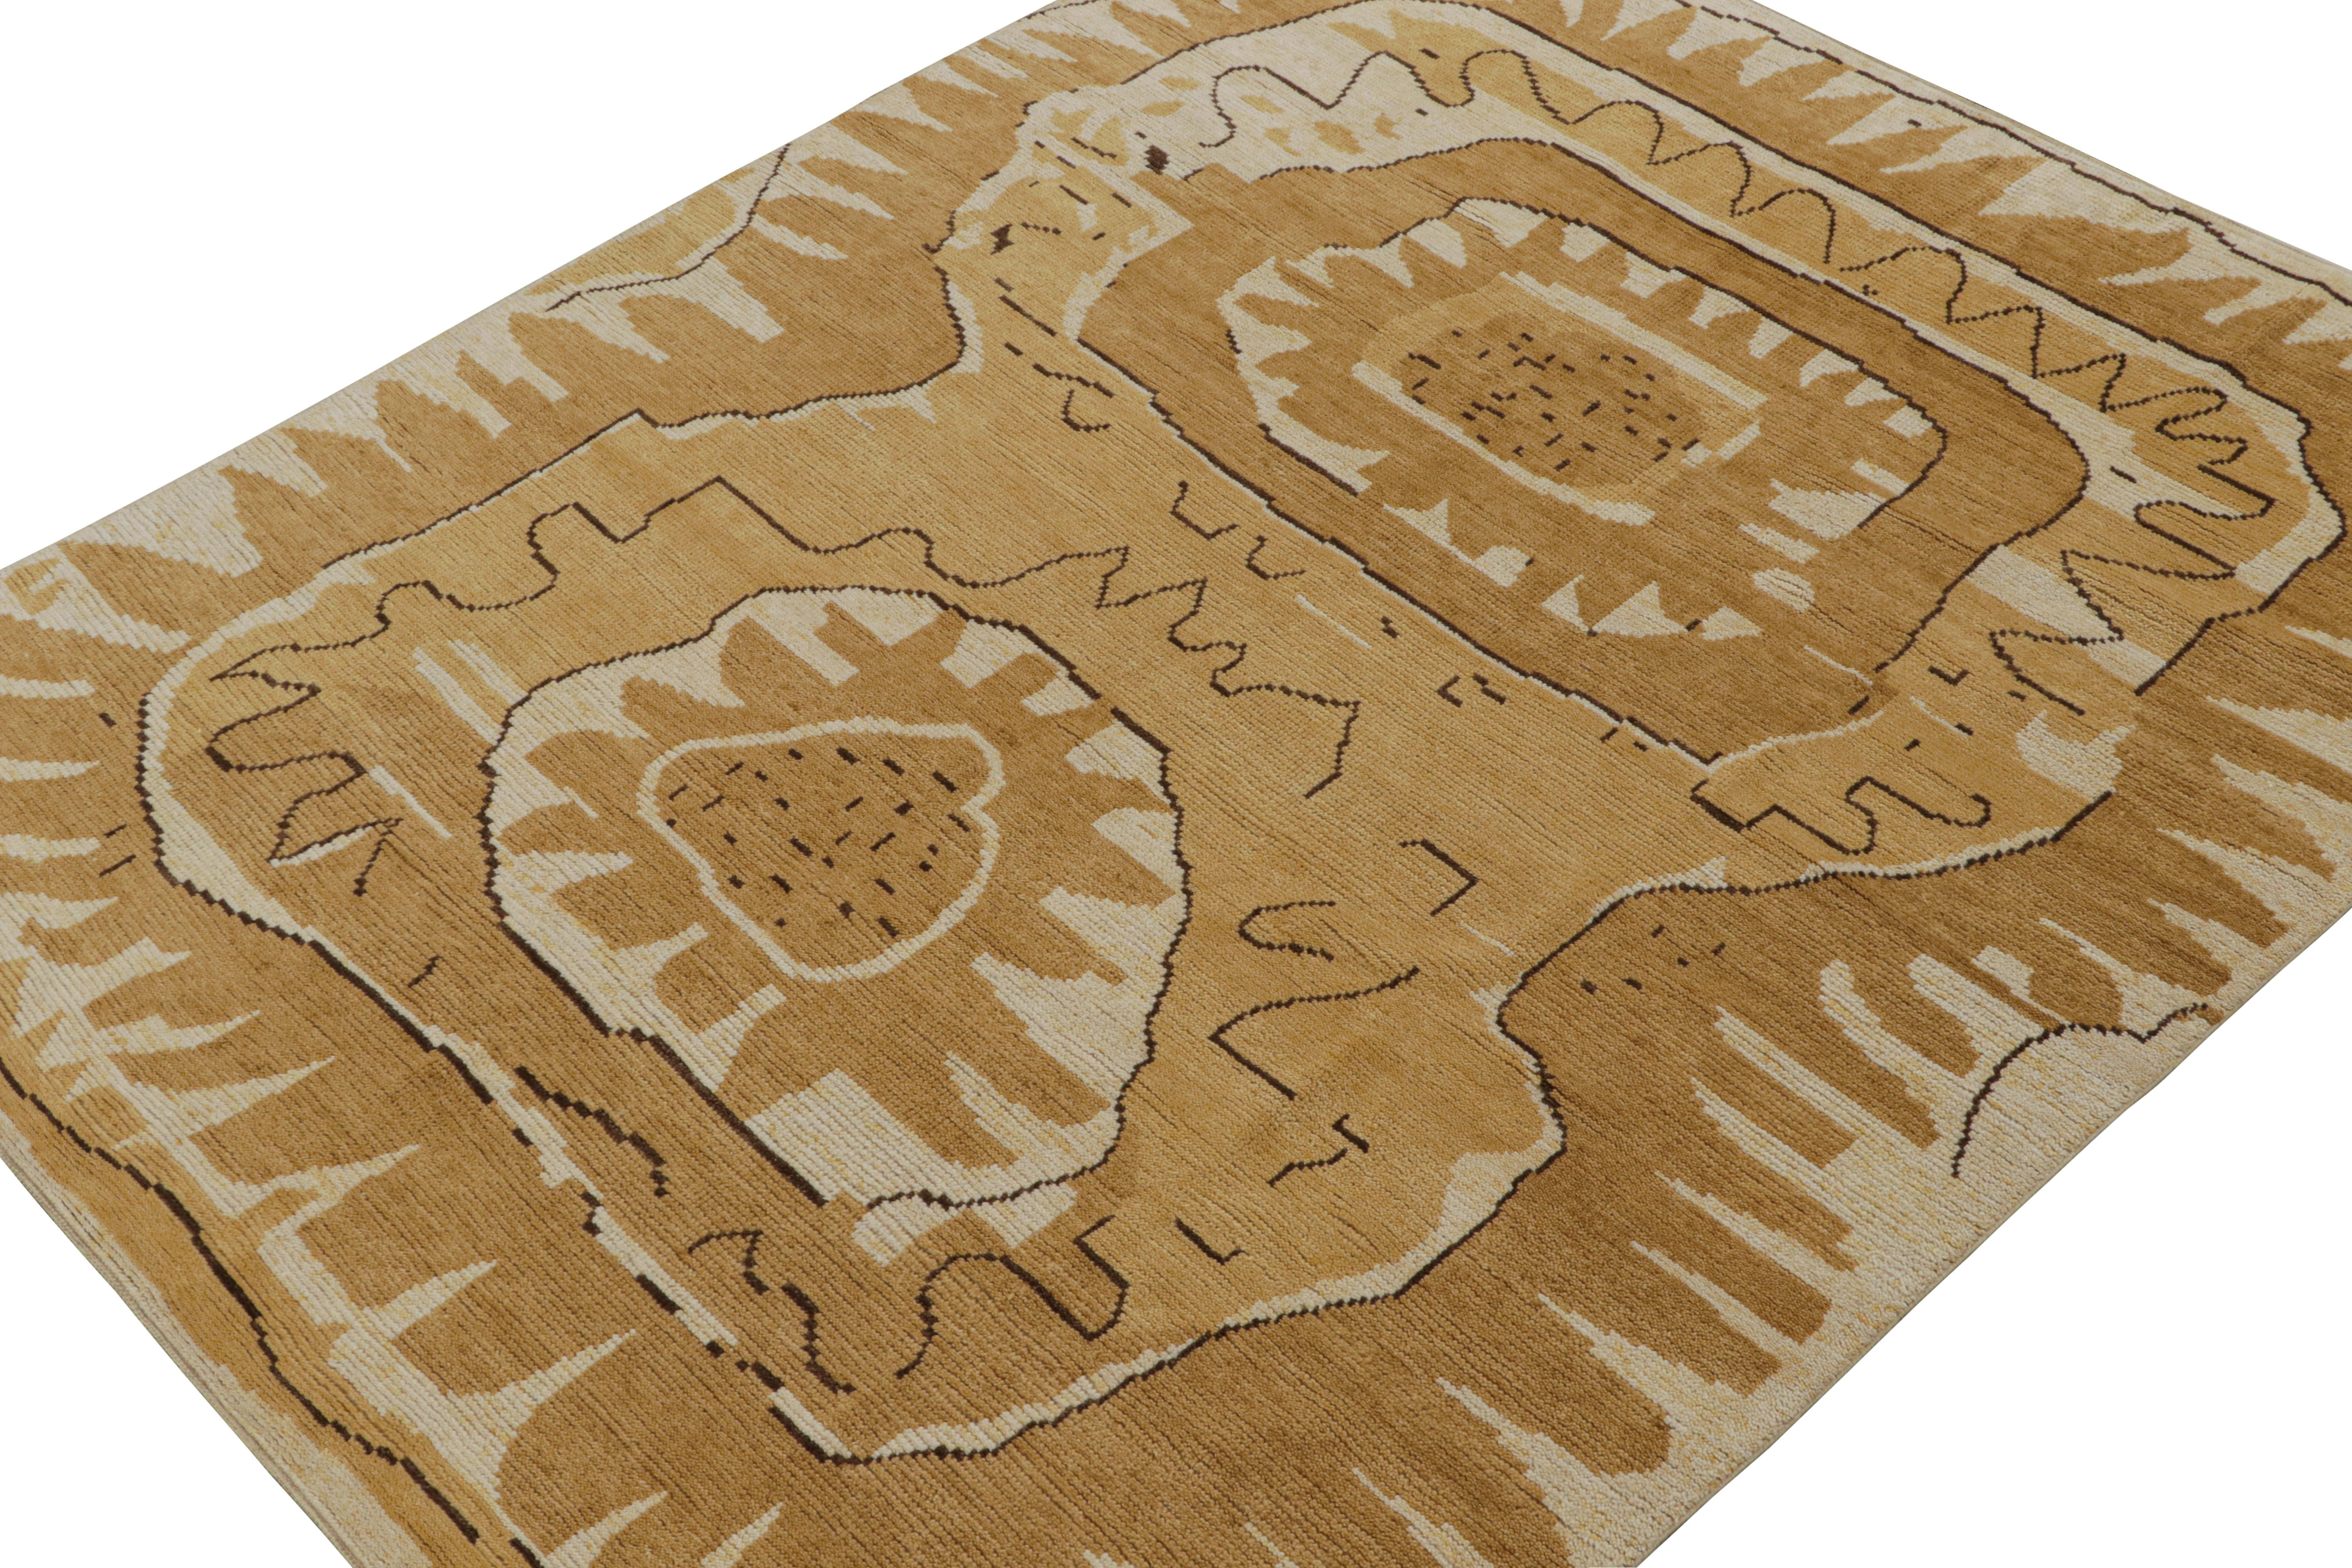 Dieser 8x10 große moderne Teppich ist eine neue Ergänzung der skandinavischen Teppichkollektion von Rug & Kilim. Das Design des handgeknüpften Wollteppichs ist eine zeitgenössische Interpretation der Rollakan- und Rya-Teppiche im schwedischen